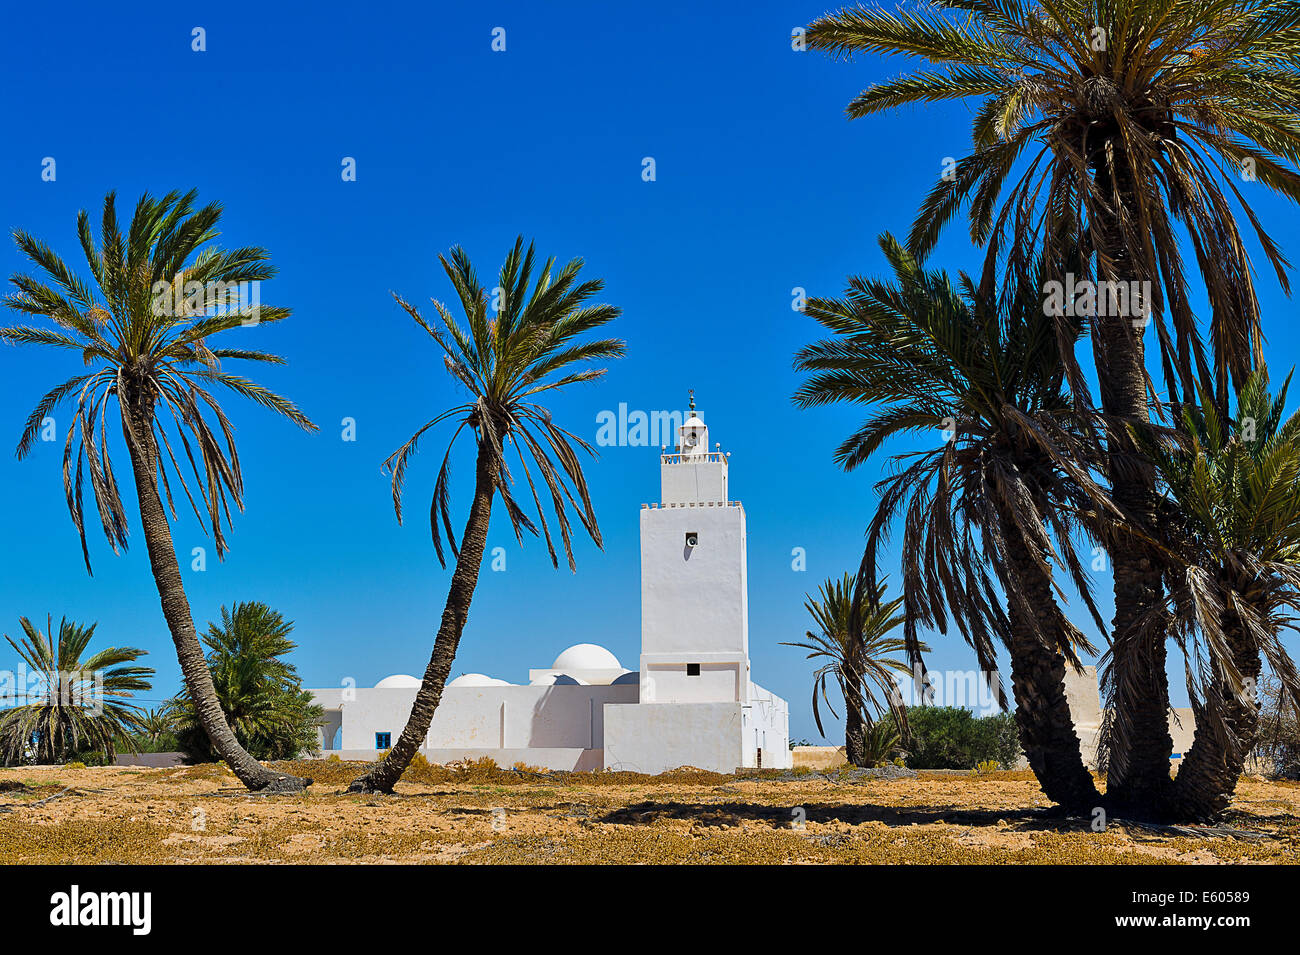 Afrique, Afrique du Nord, Maghreb, au sud de la Tunisie, l'île de Djerba. Guellala. Mosquée. Banque D'Images